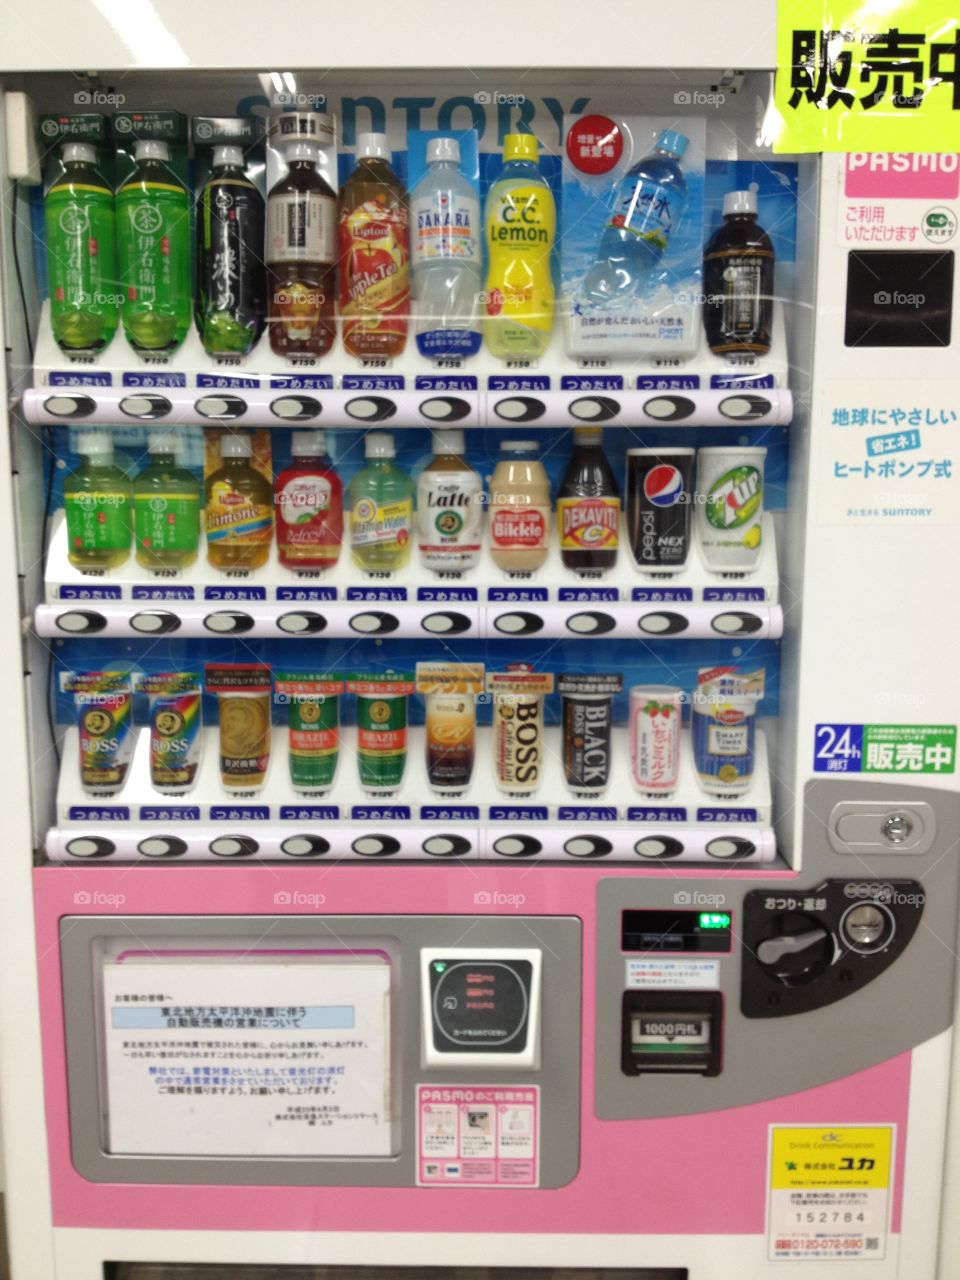 Japan Vending